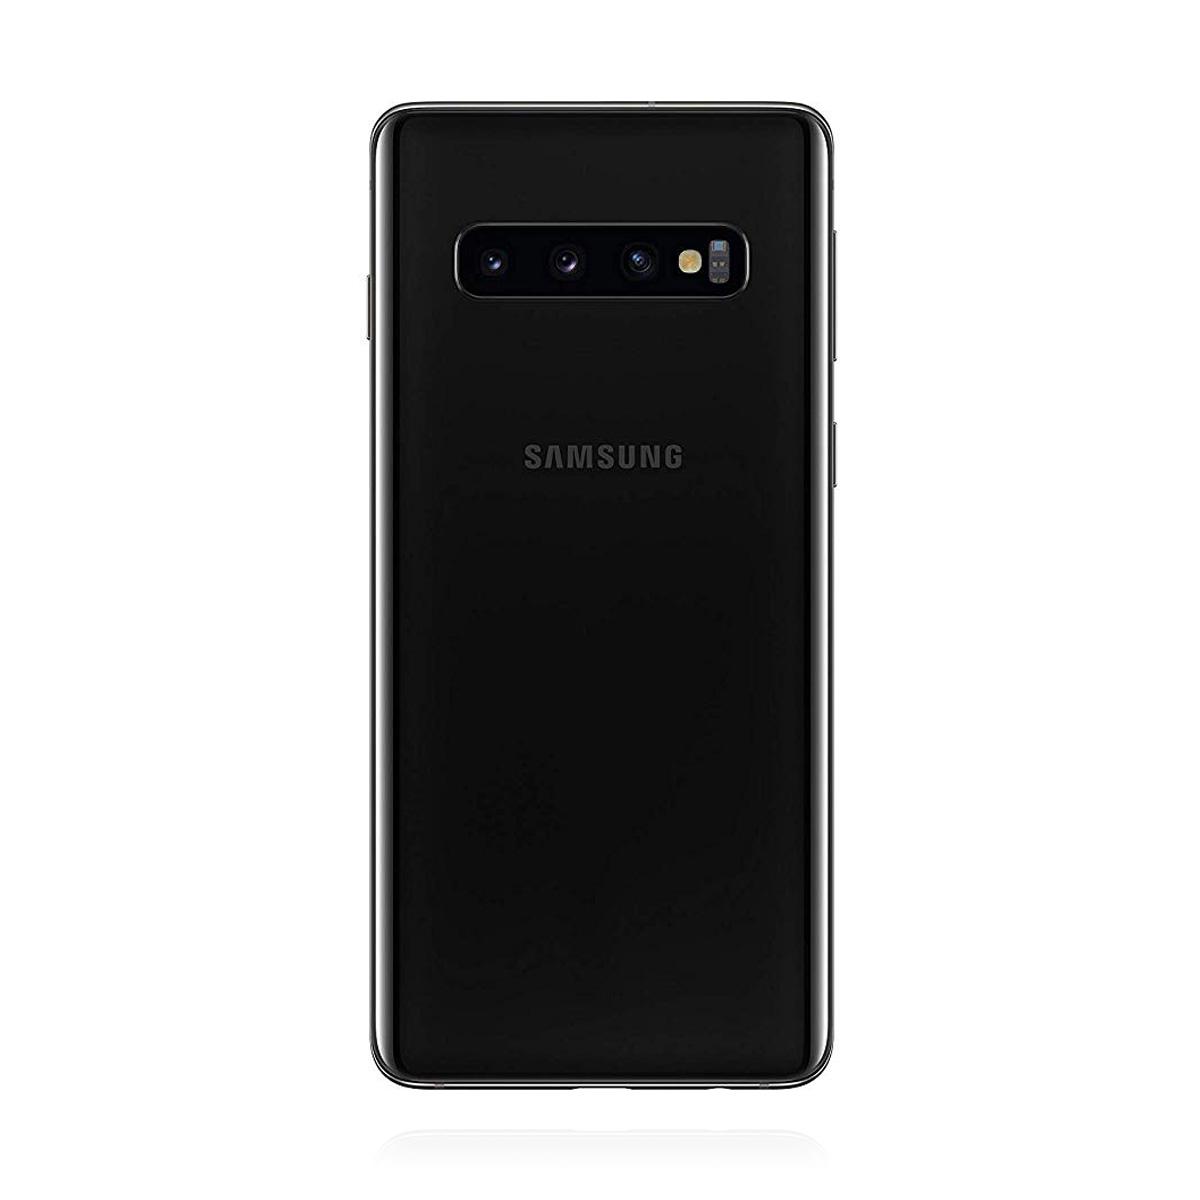 Galaxy S10 Prism Black SM-G973F/DS海外版-